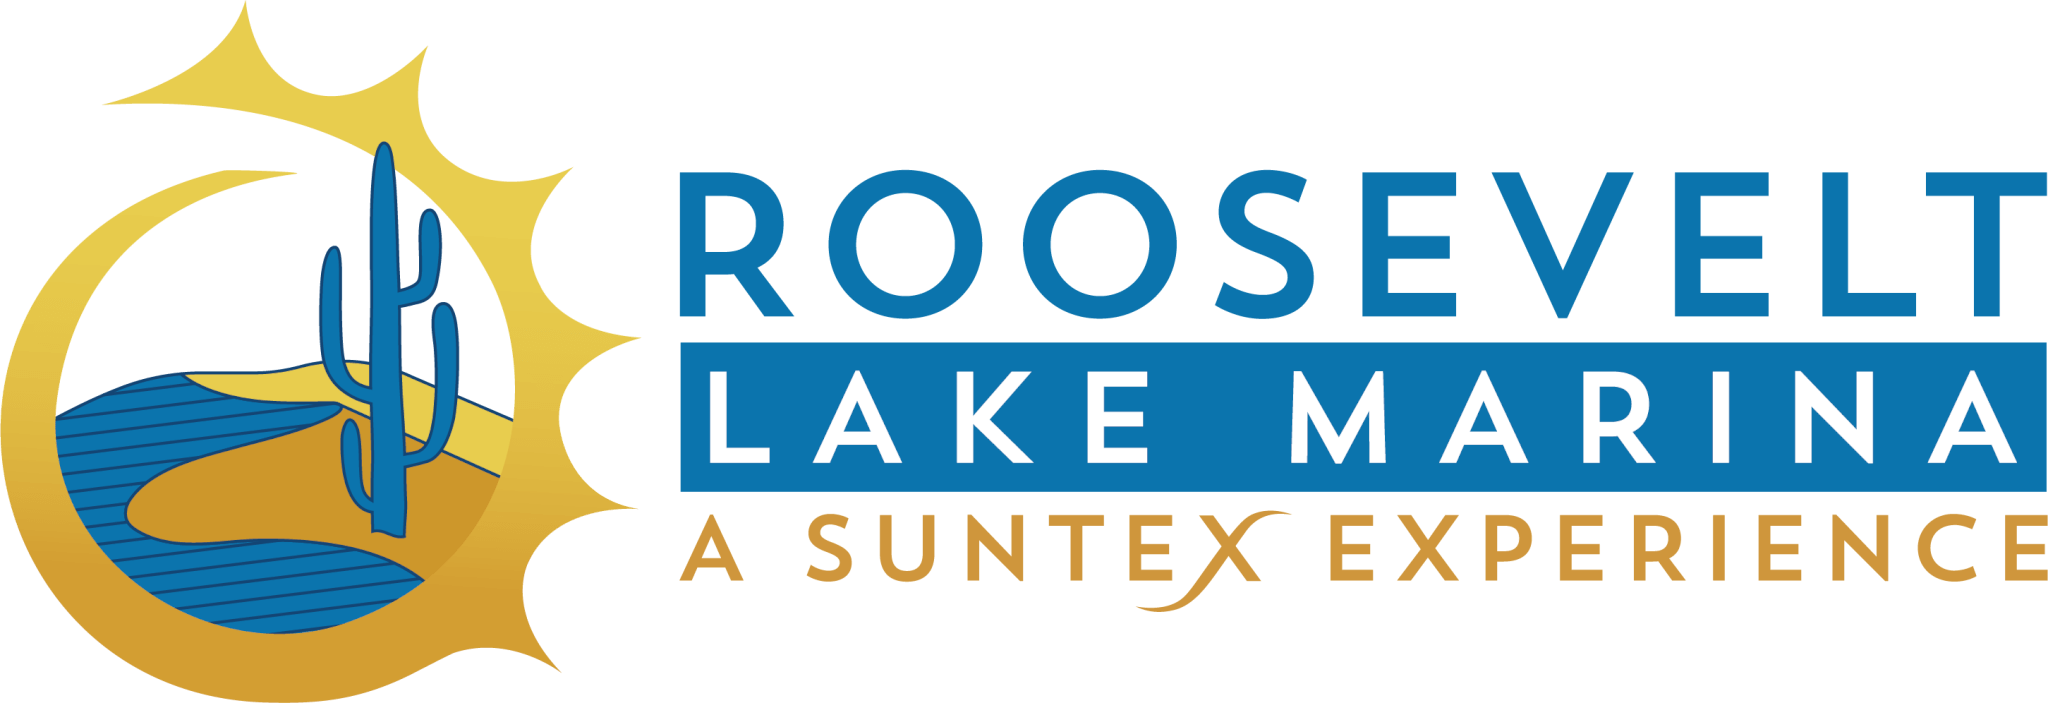 Roosevelt Lake Marina